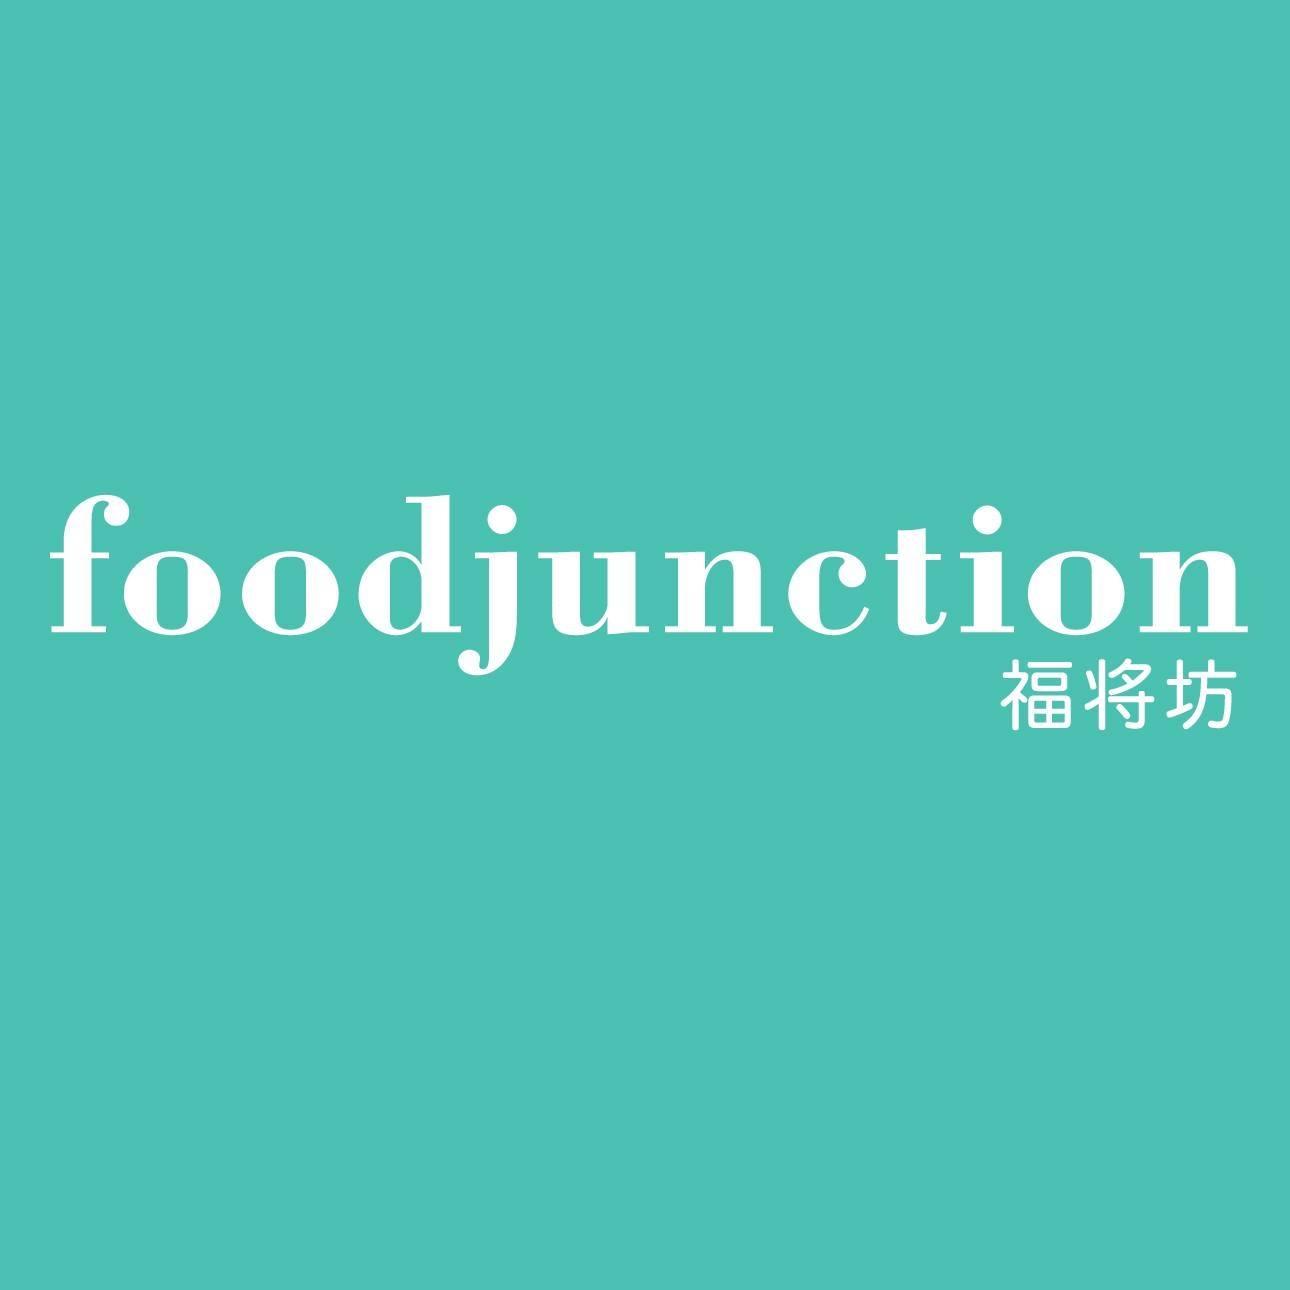 Food Junction - Logo